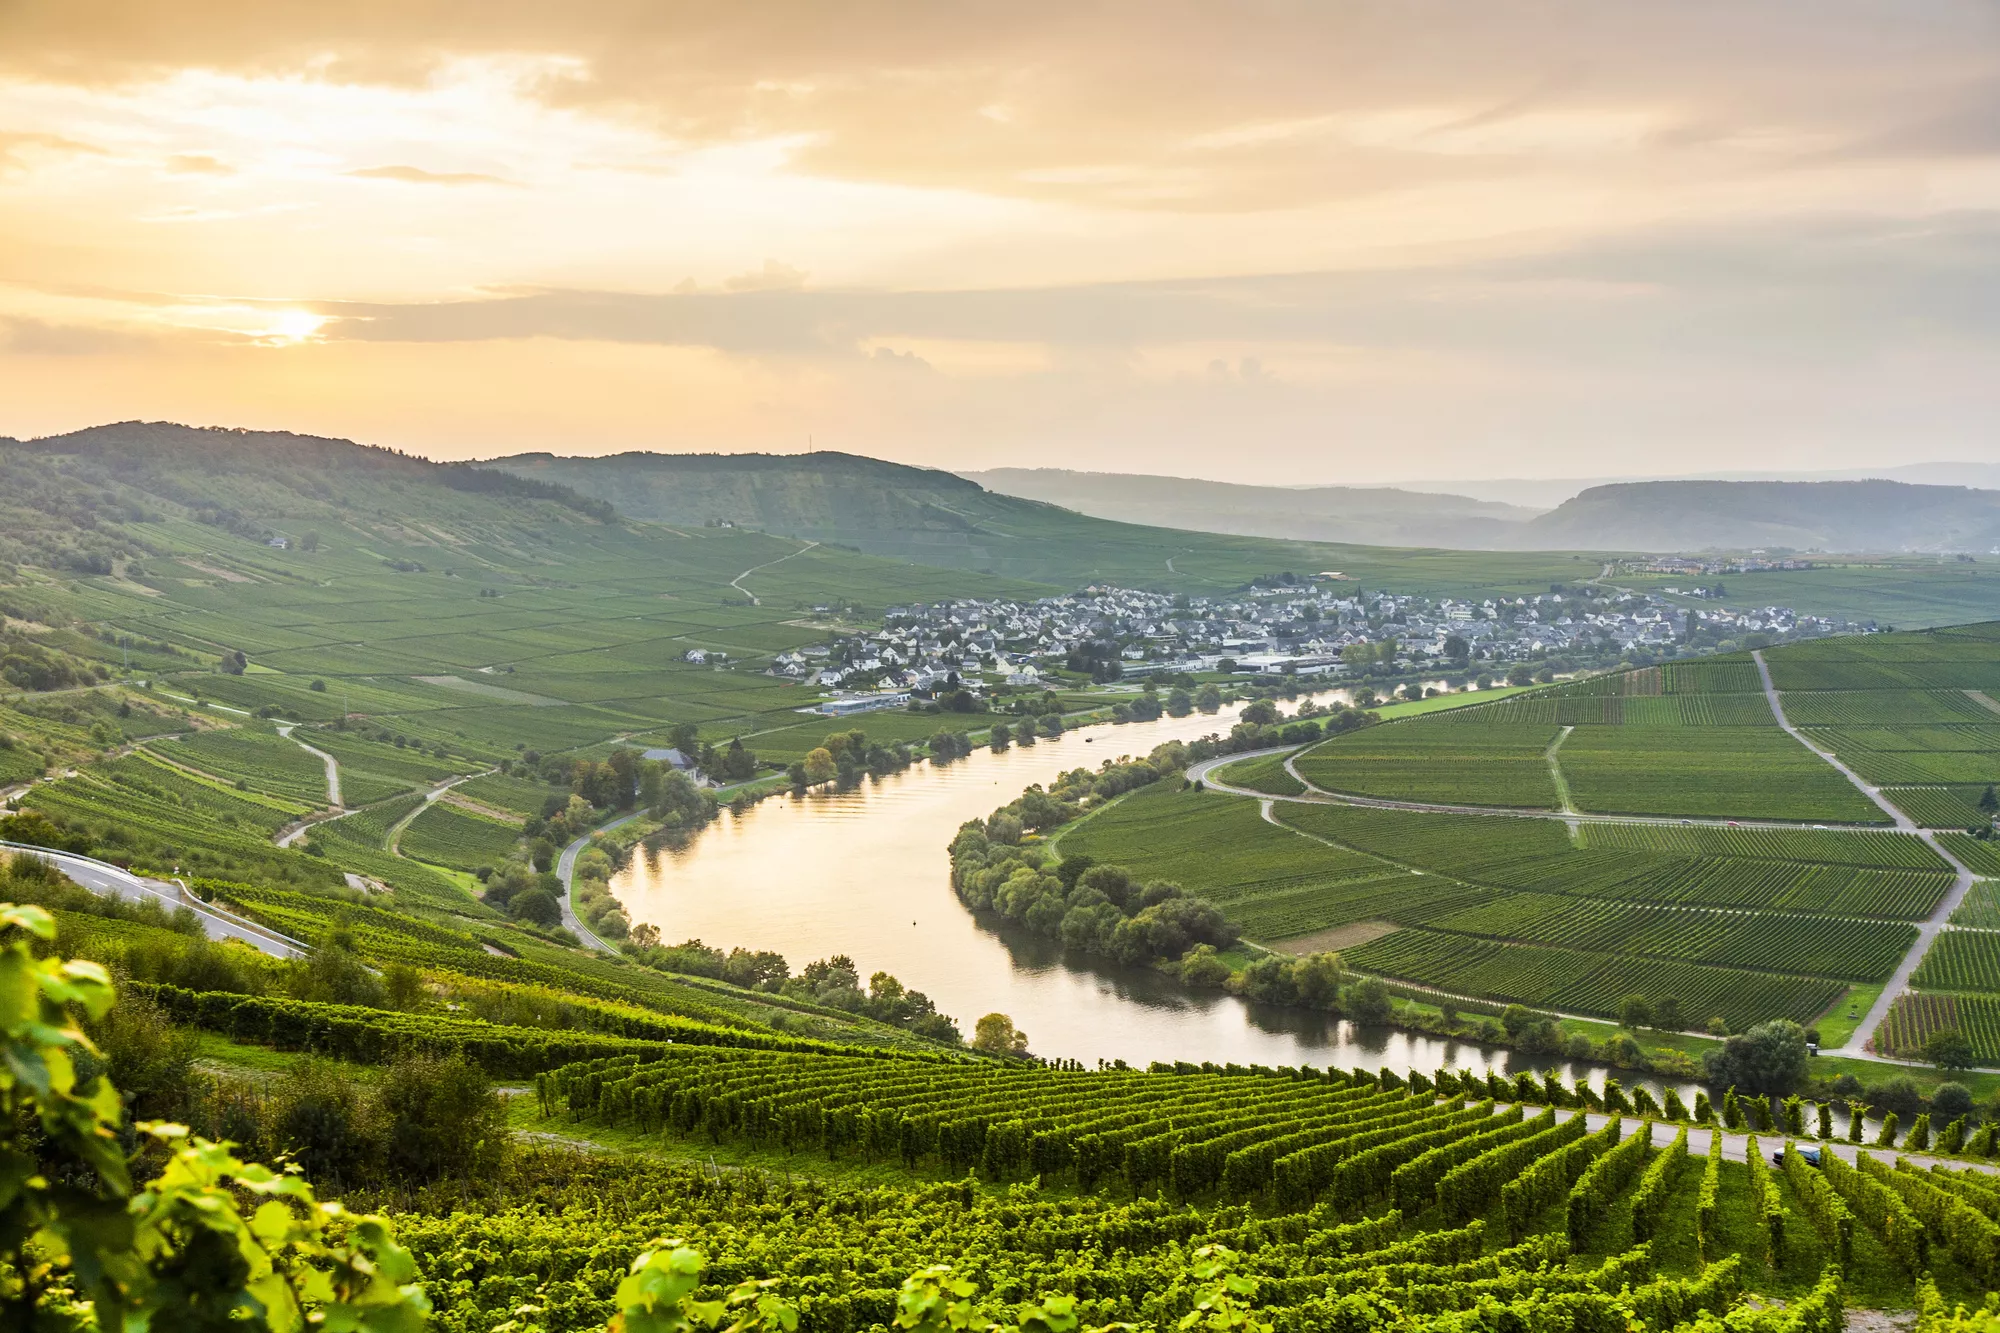 Vallei met glooiende heuvels met wijnranken, rivier de moezel in het midden